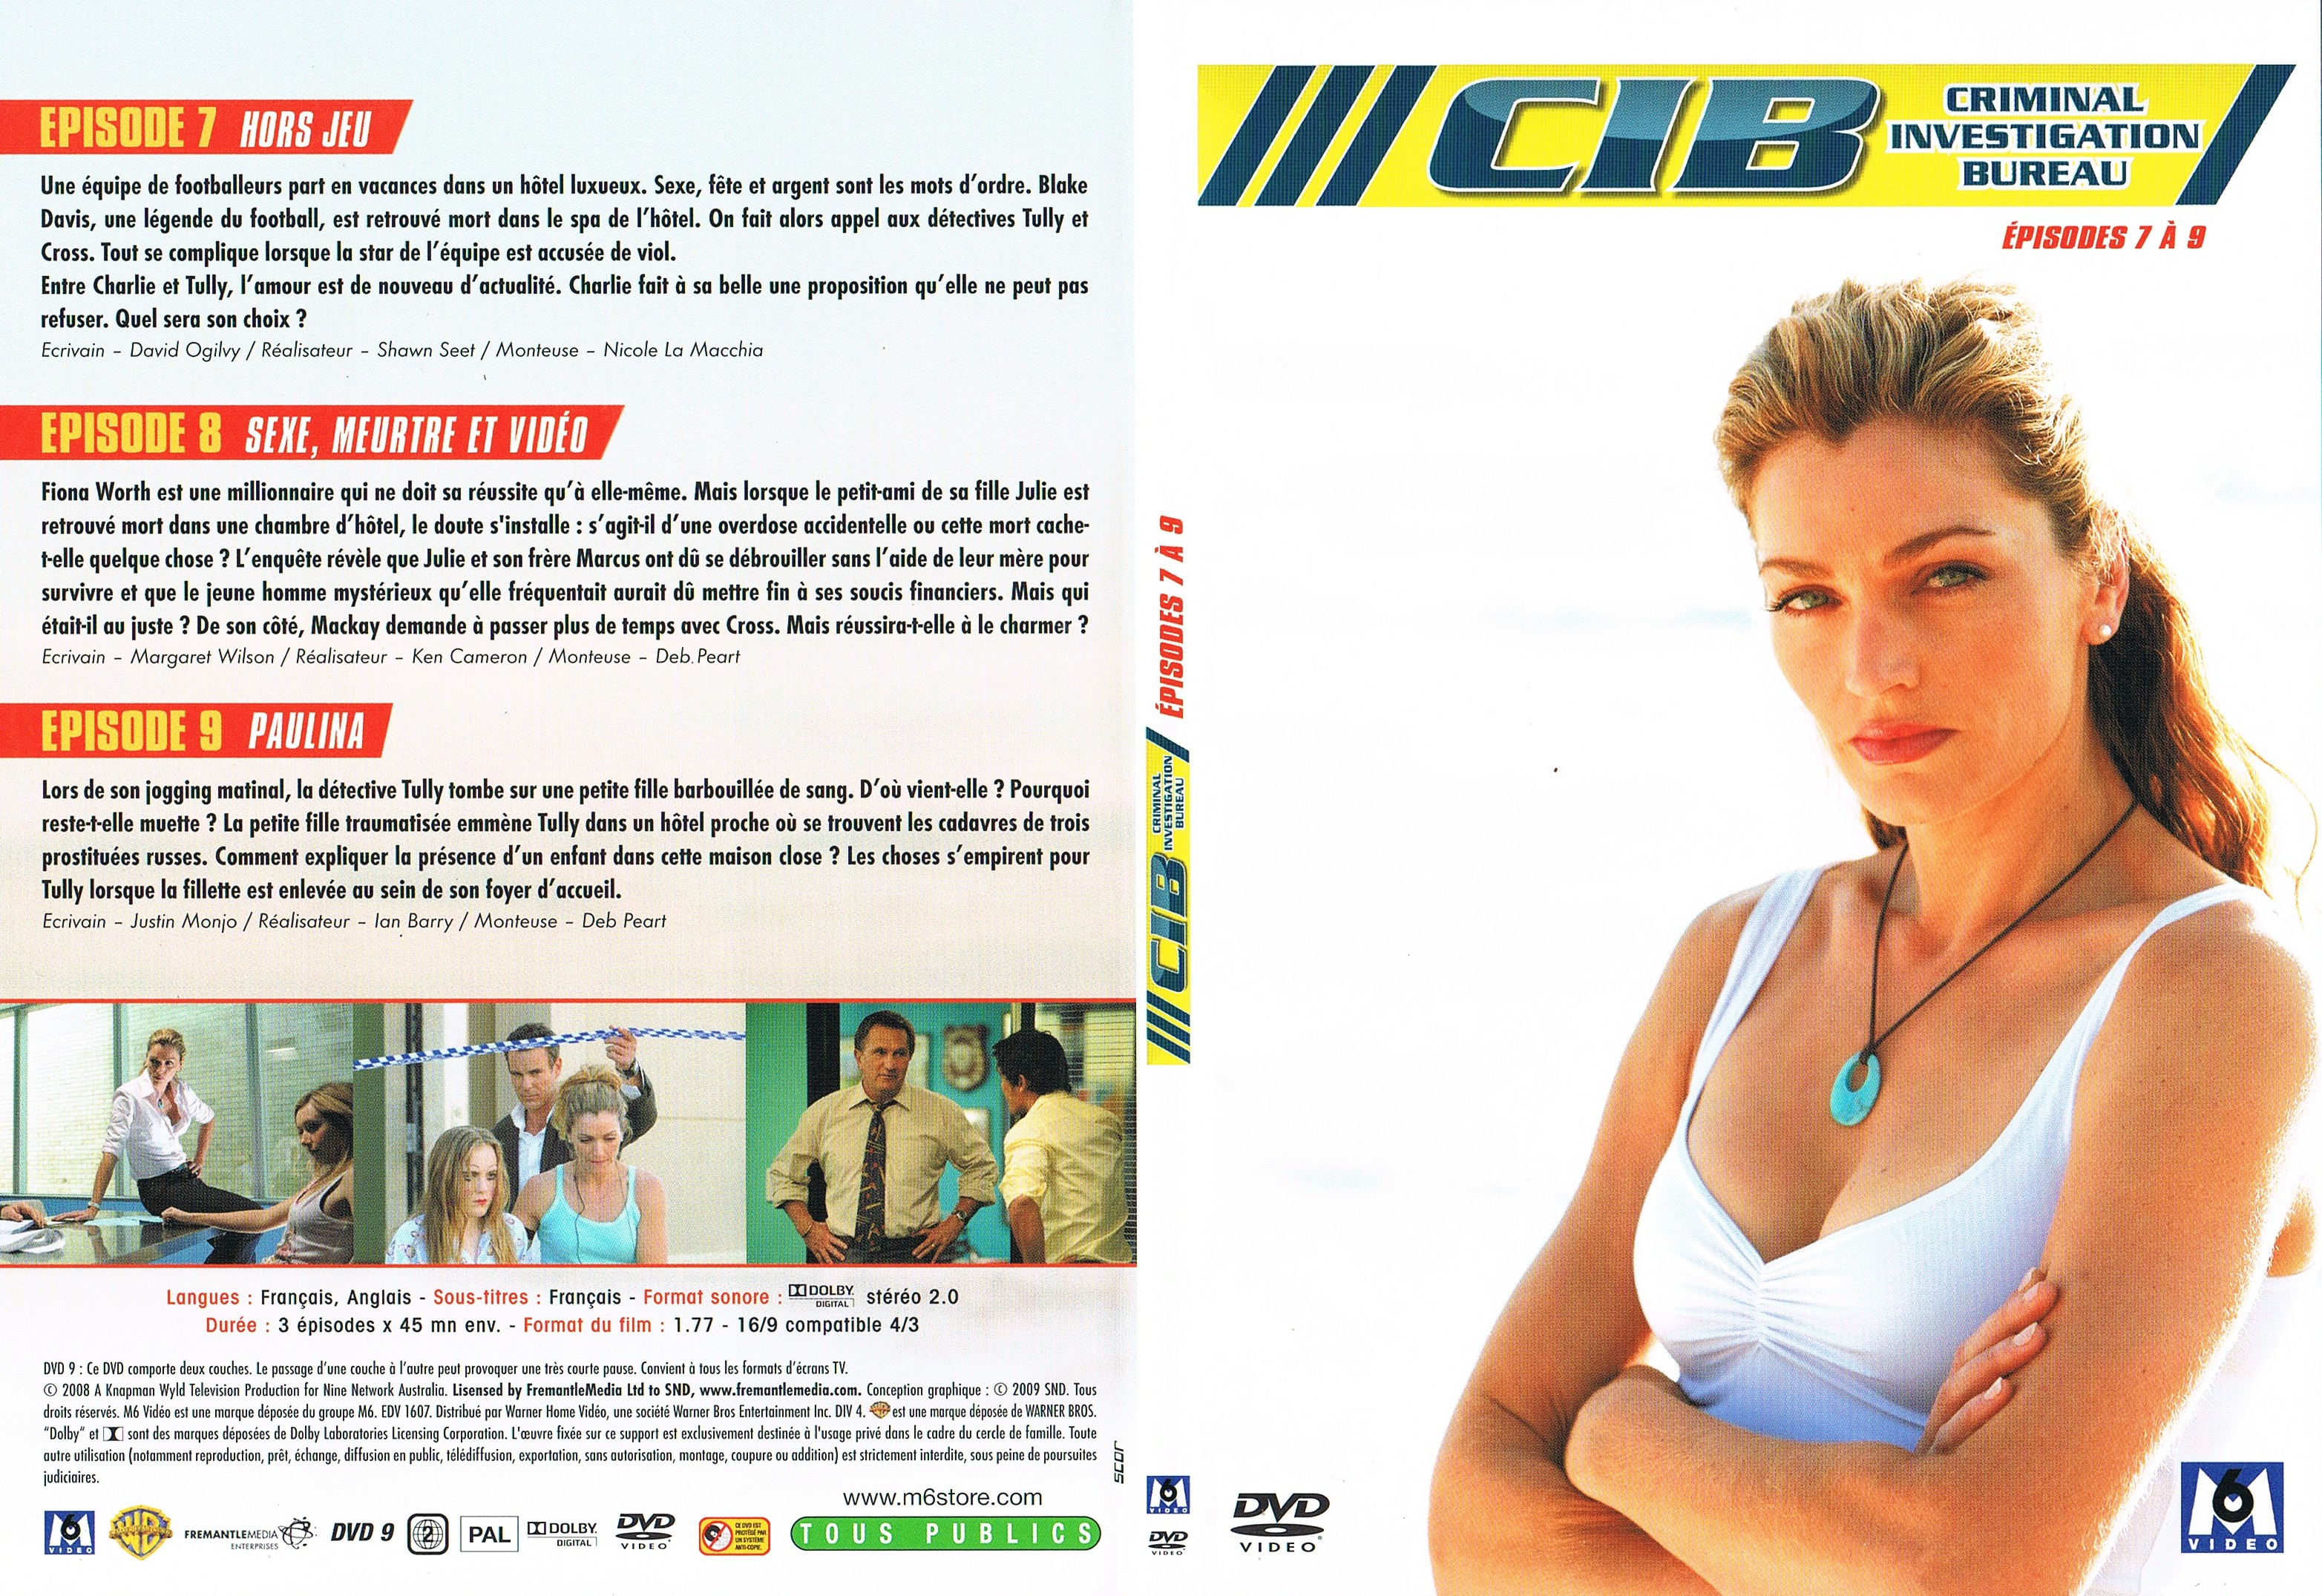 Jaquette DVD CIB Criminal Investigation Bureau Saison 1 DVD 3